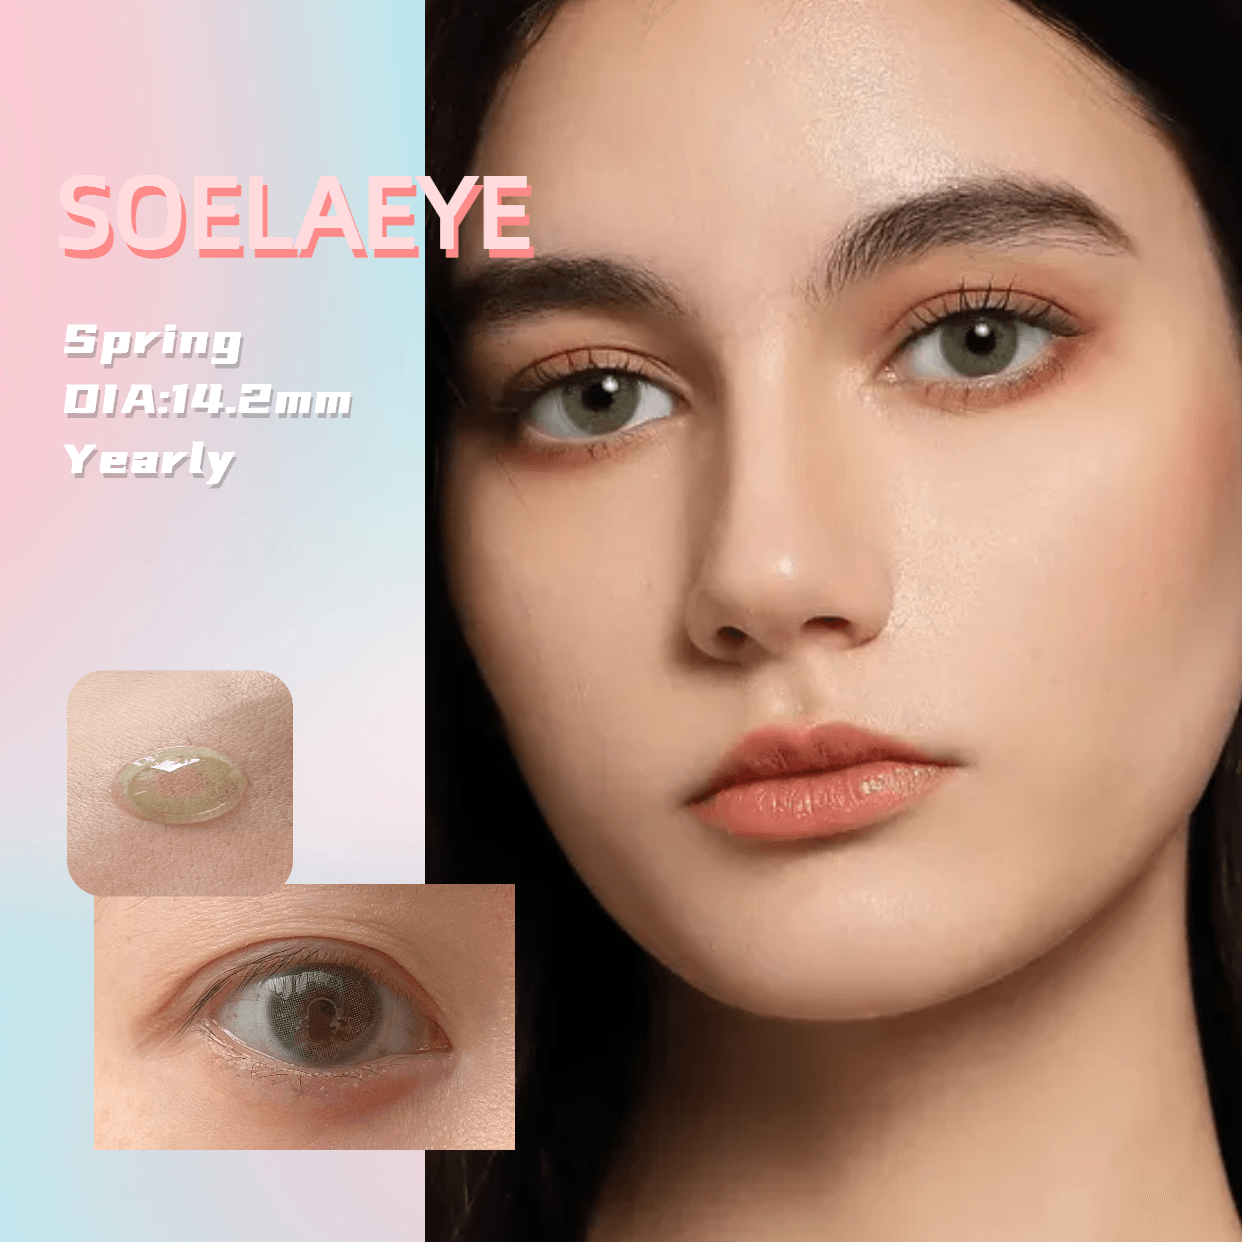 Soela Eye丨Middle East丨14.2mm 1pair Yearly